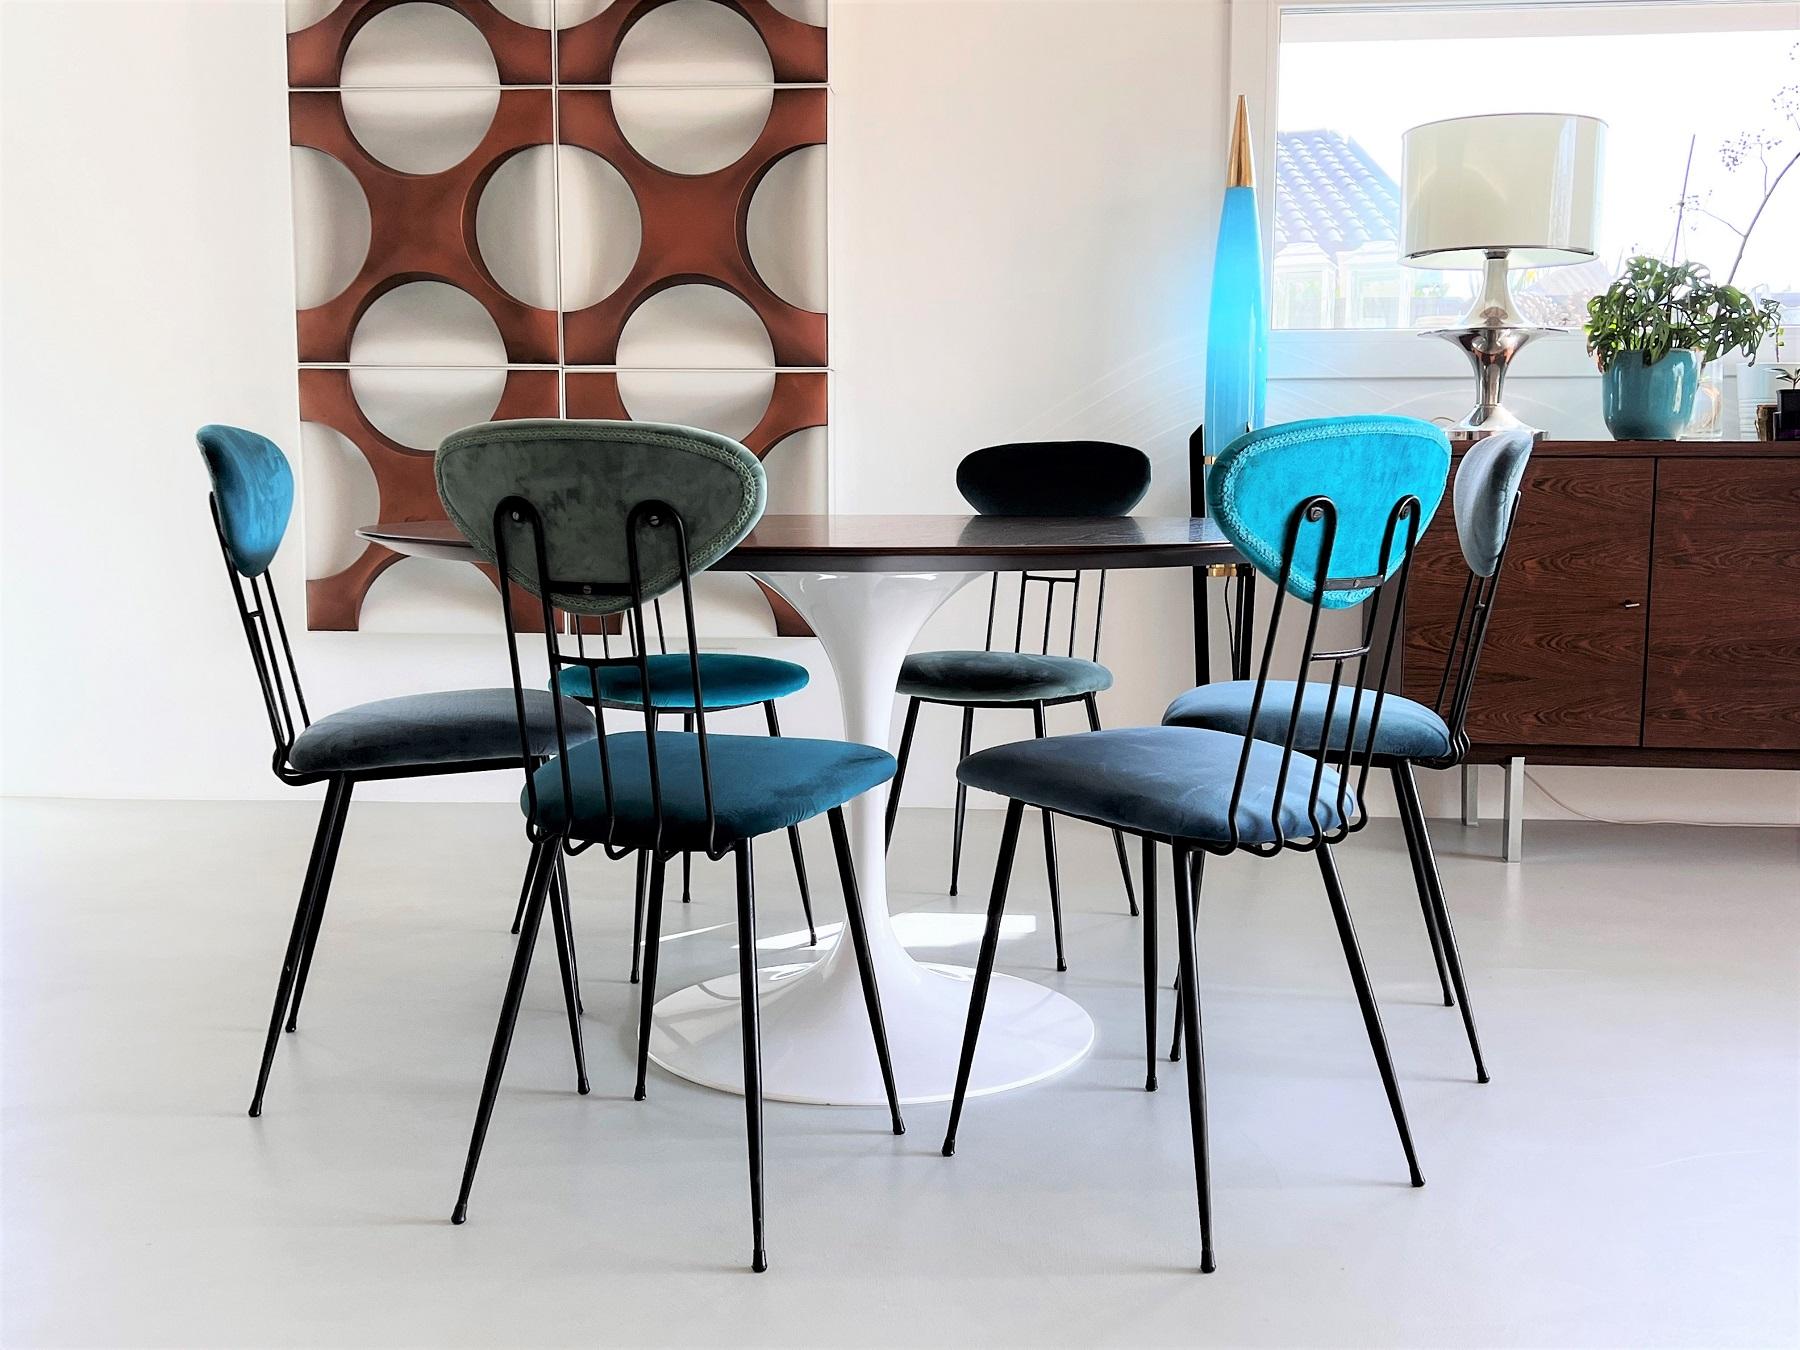 Un magnifique et confortable ensemble de six chaises de salle à manger originales du milieu du siècle italien, fabriquées dans le style de Gastone Rinaldi ou RIMA.
Les chaises ont été entièrement retapissées avec du velours dans différentes nuances